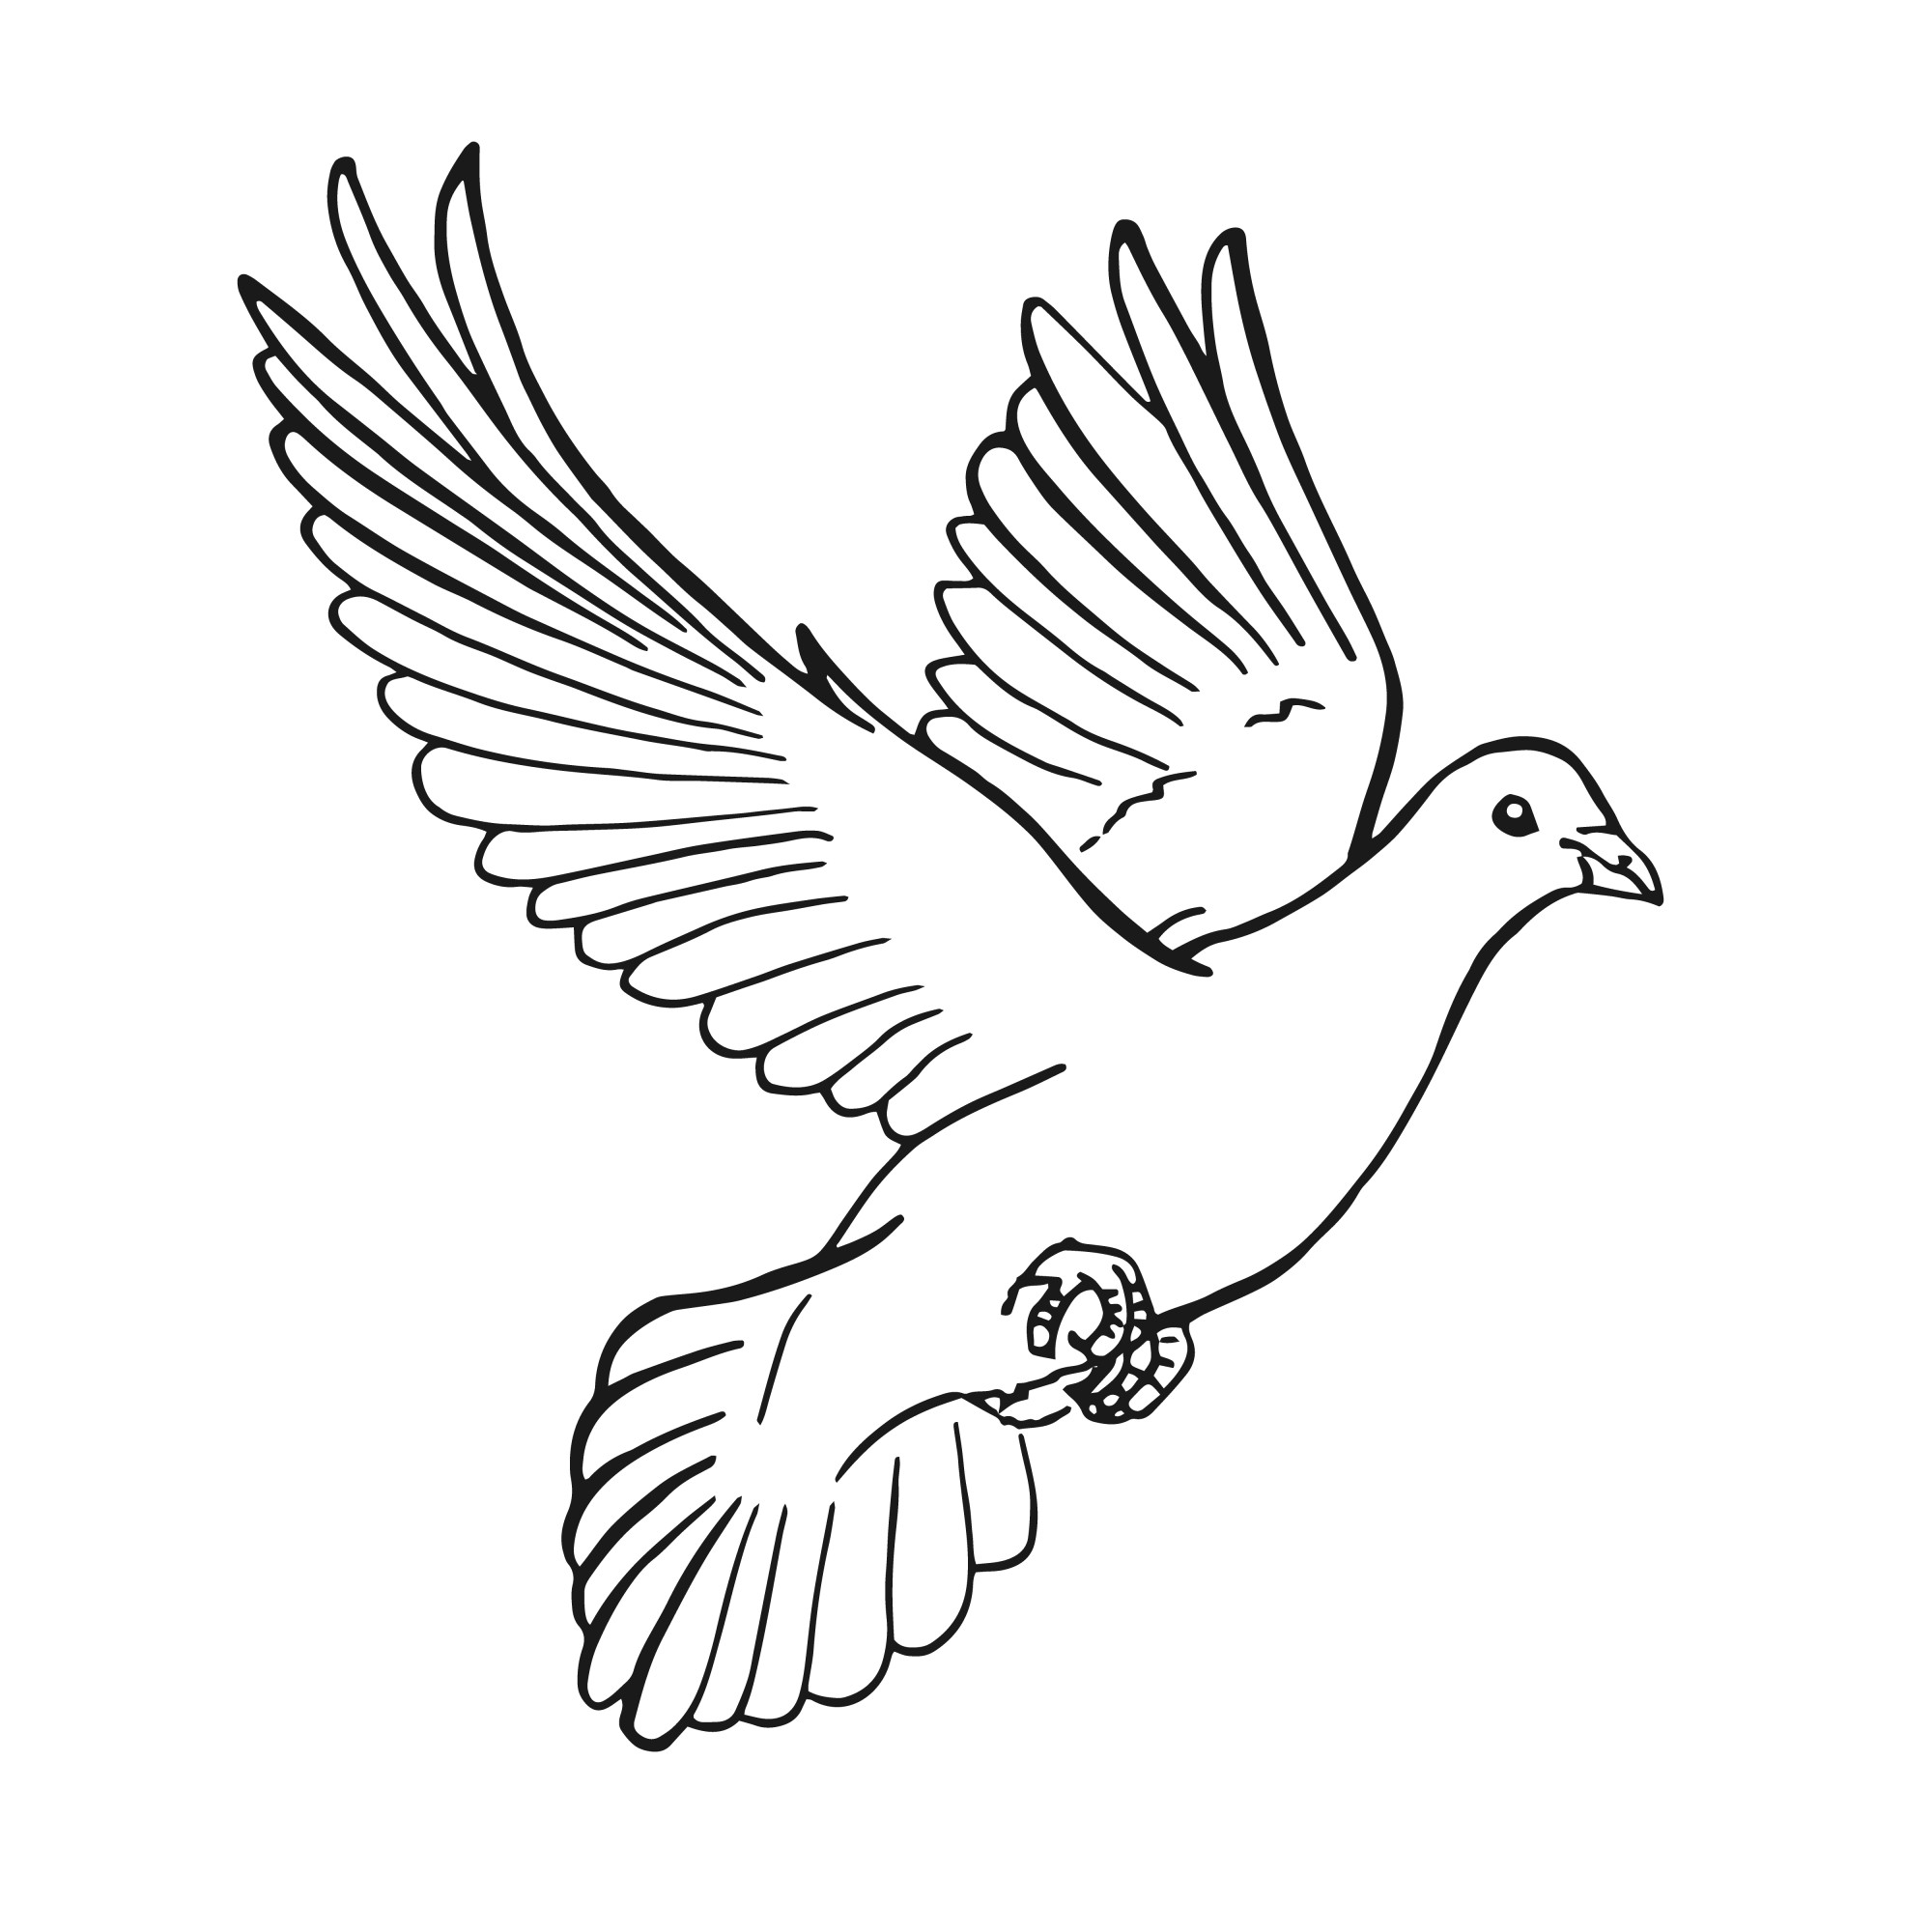 Раскраска для детей: порхающий голубь